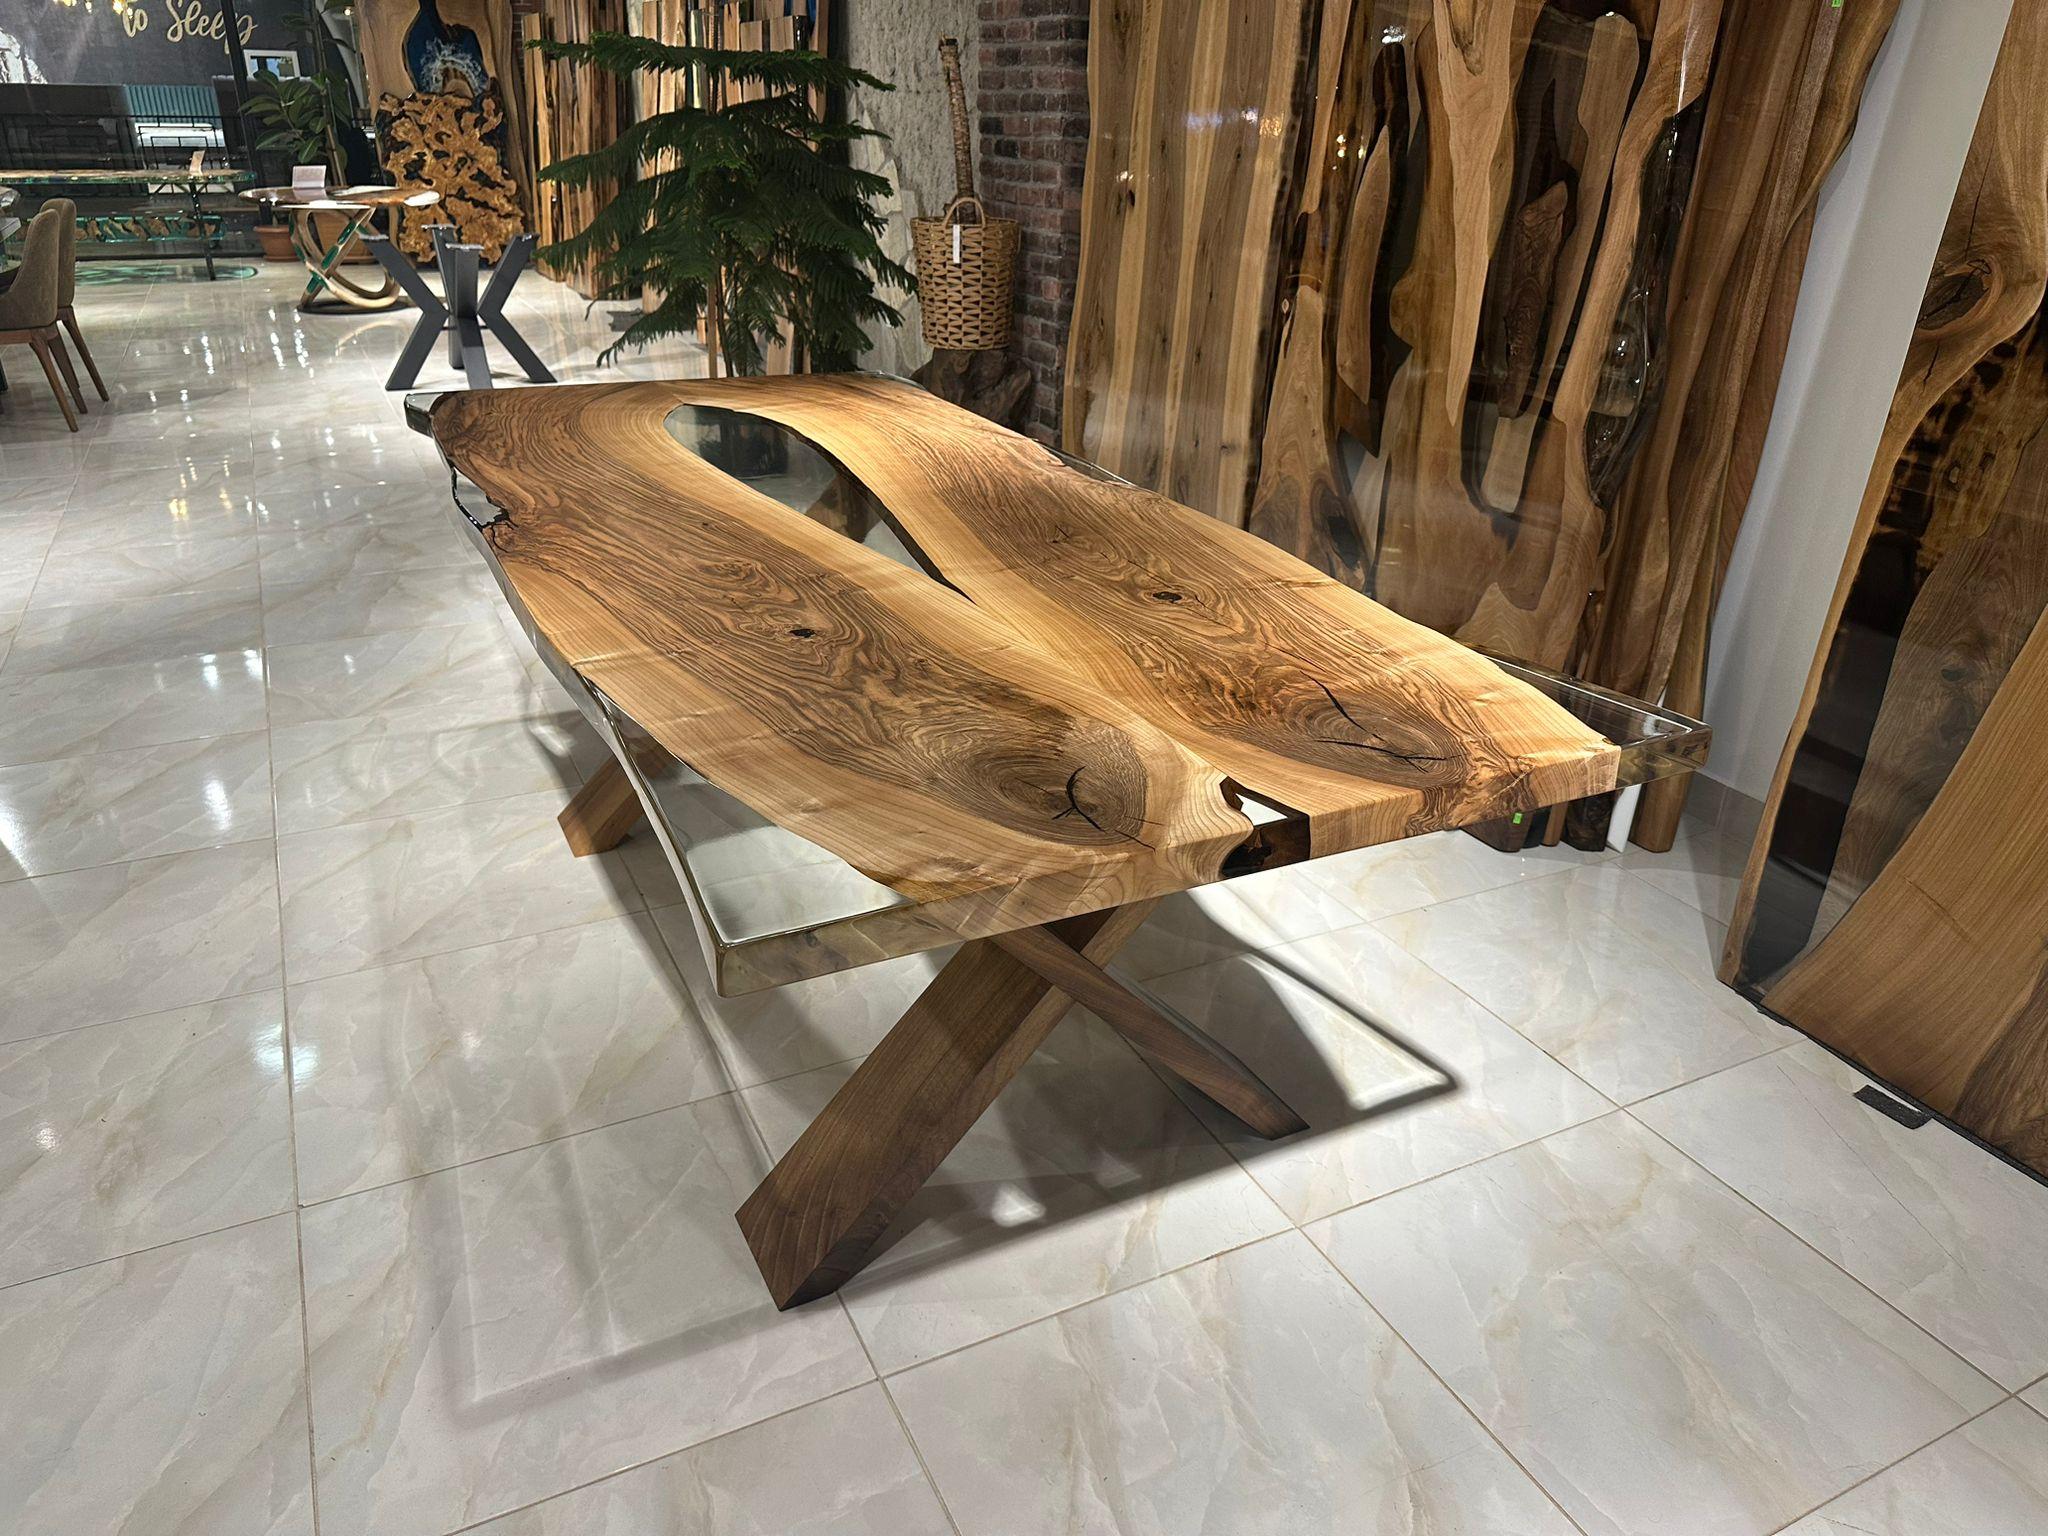 Table de salle à manger en résine époxy noyer clair 

Cette table est fabriquée en bois de noyer. Les veines et la texture du bois décrivent l'aspect d'un bois de noyer naturel.
Elle peut être utilisée comme table de salle à manger ou comme table de